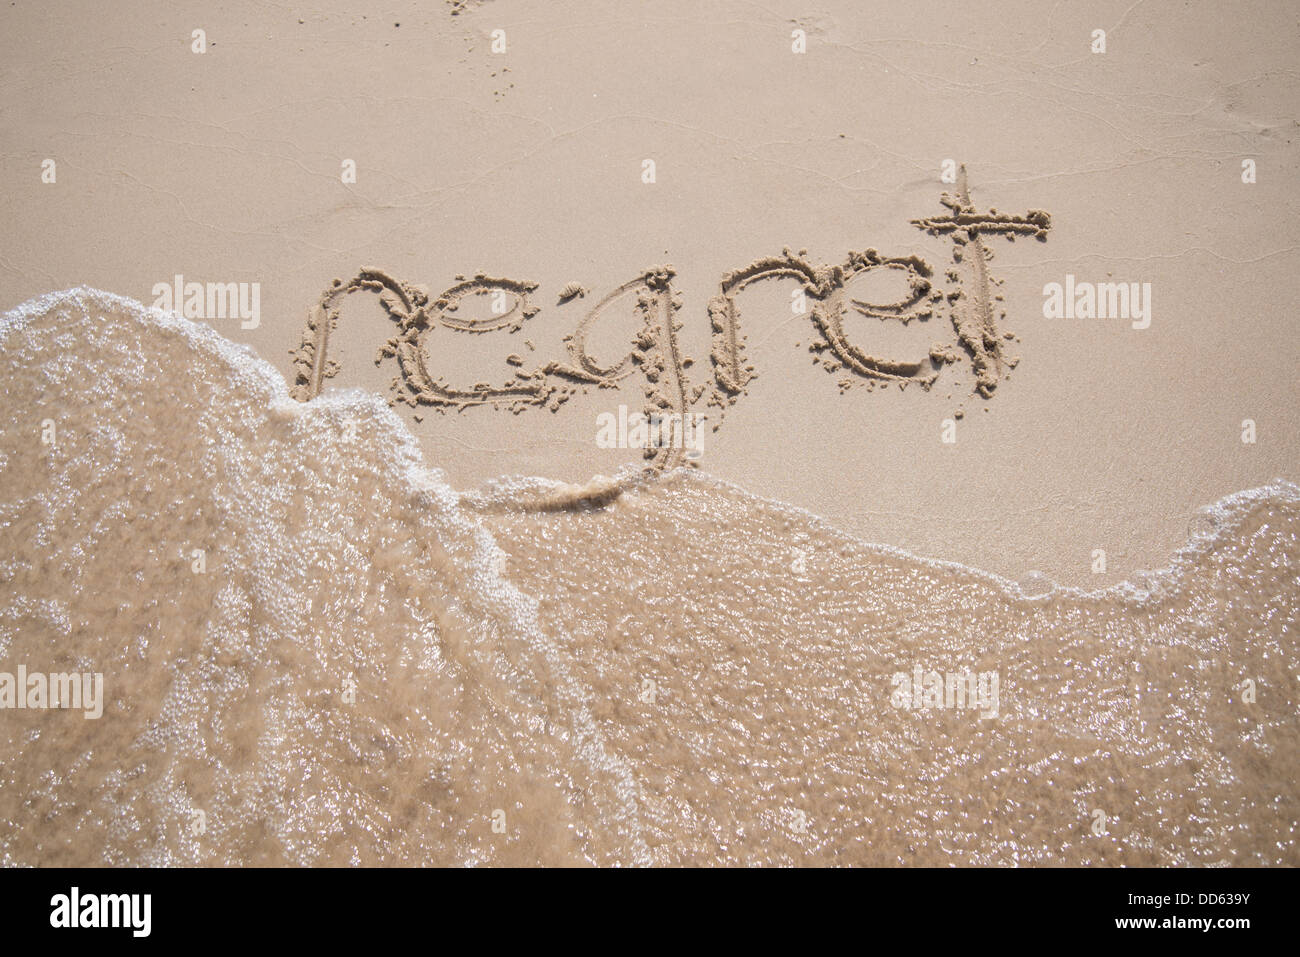 Das Wort "Bedauern", geschrieben in den Sand, die von einer Welle weggespült. Stockfoto